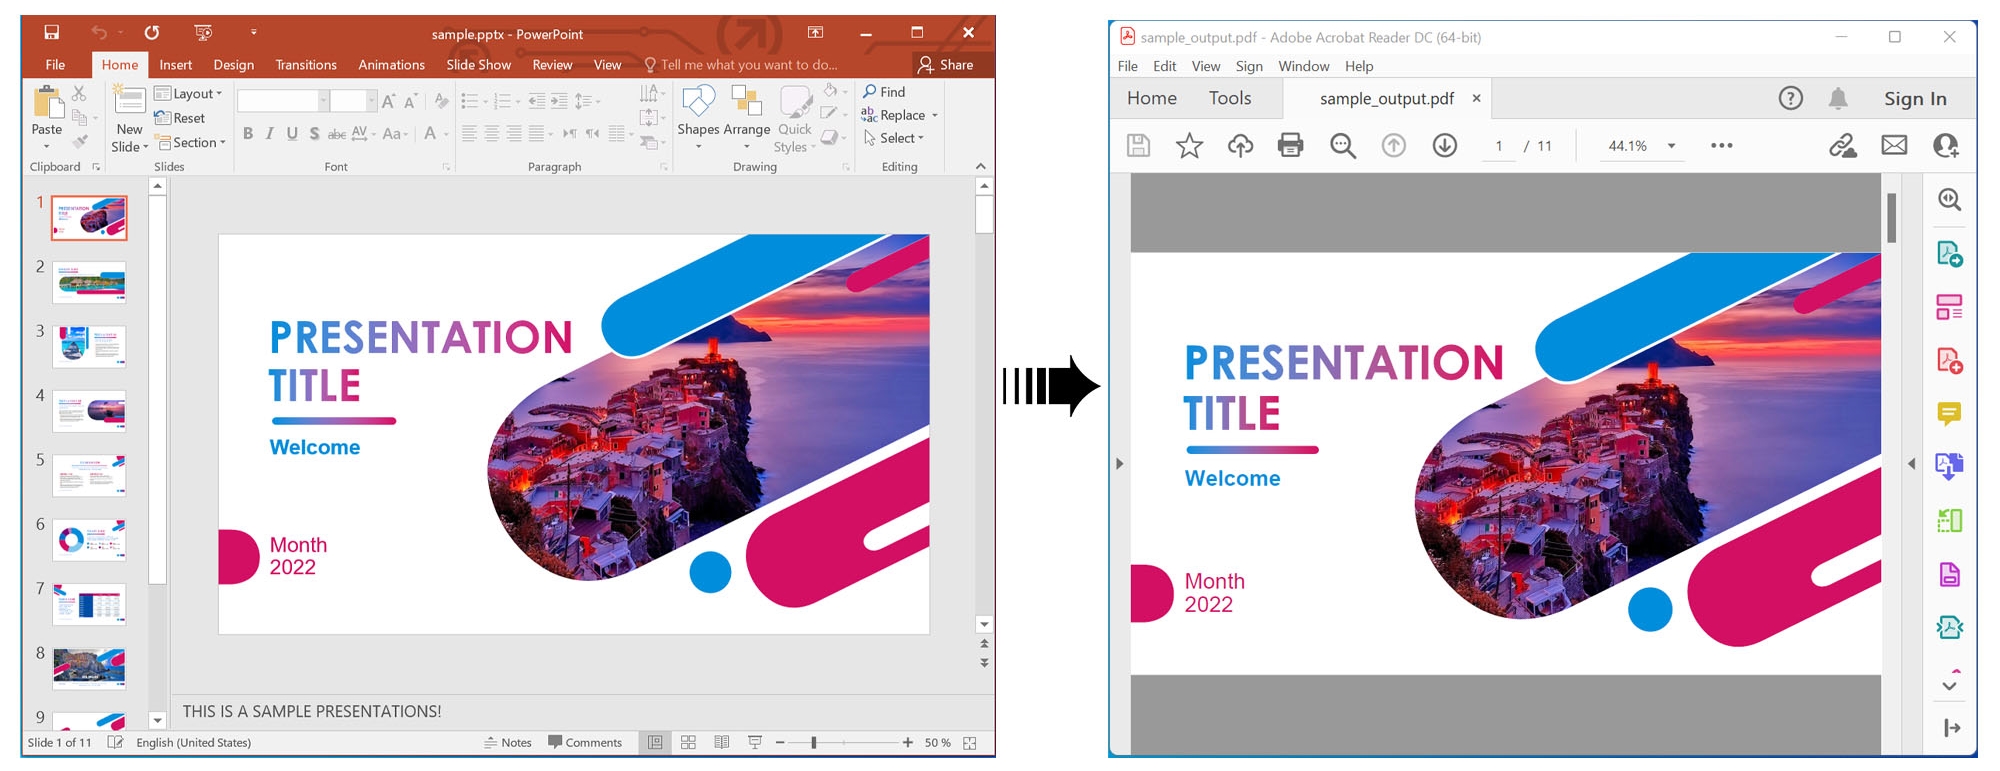 แสดงผลงานนำเสนอ PowerPoint ในรูปแบบ PDF โดยใช้ C#